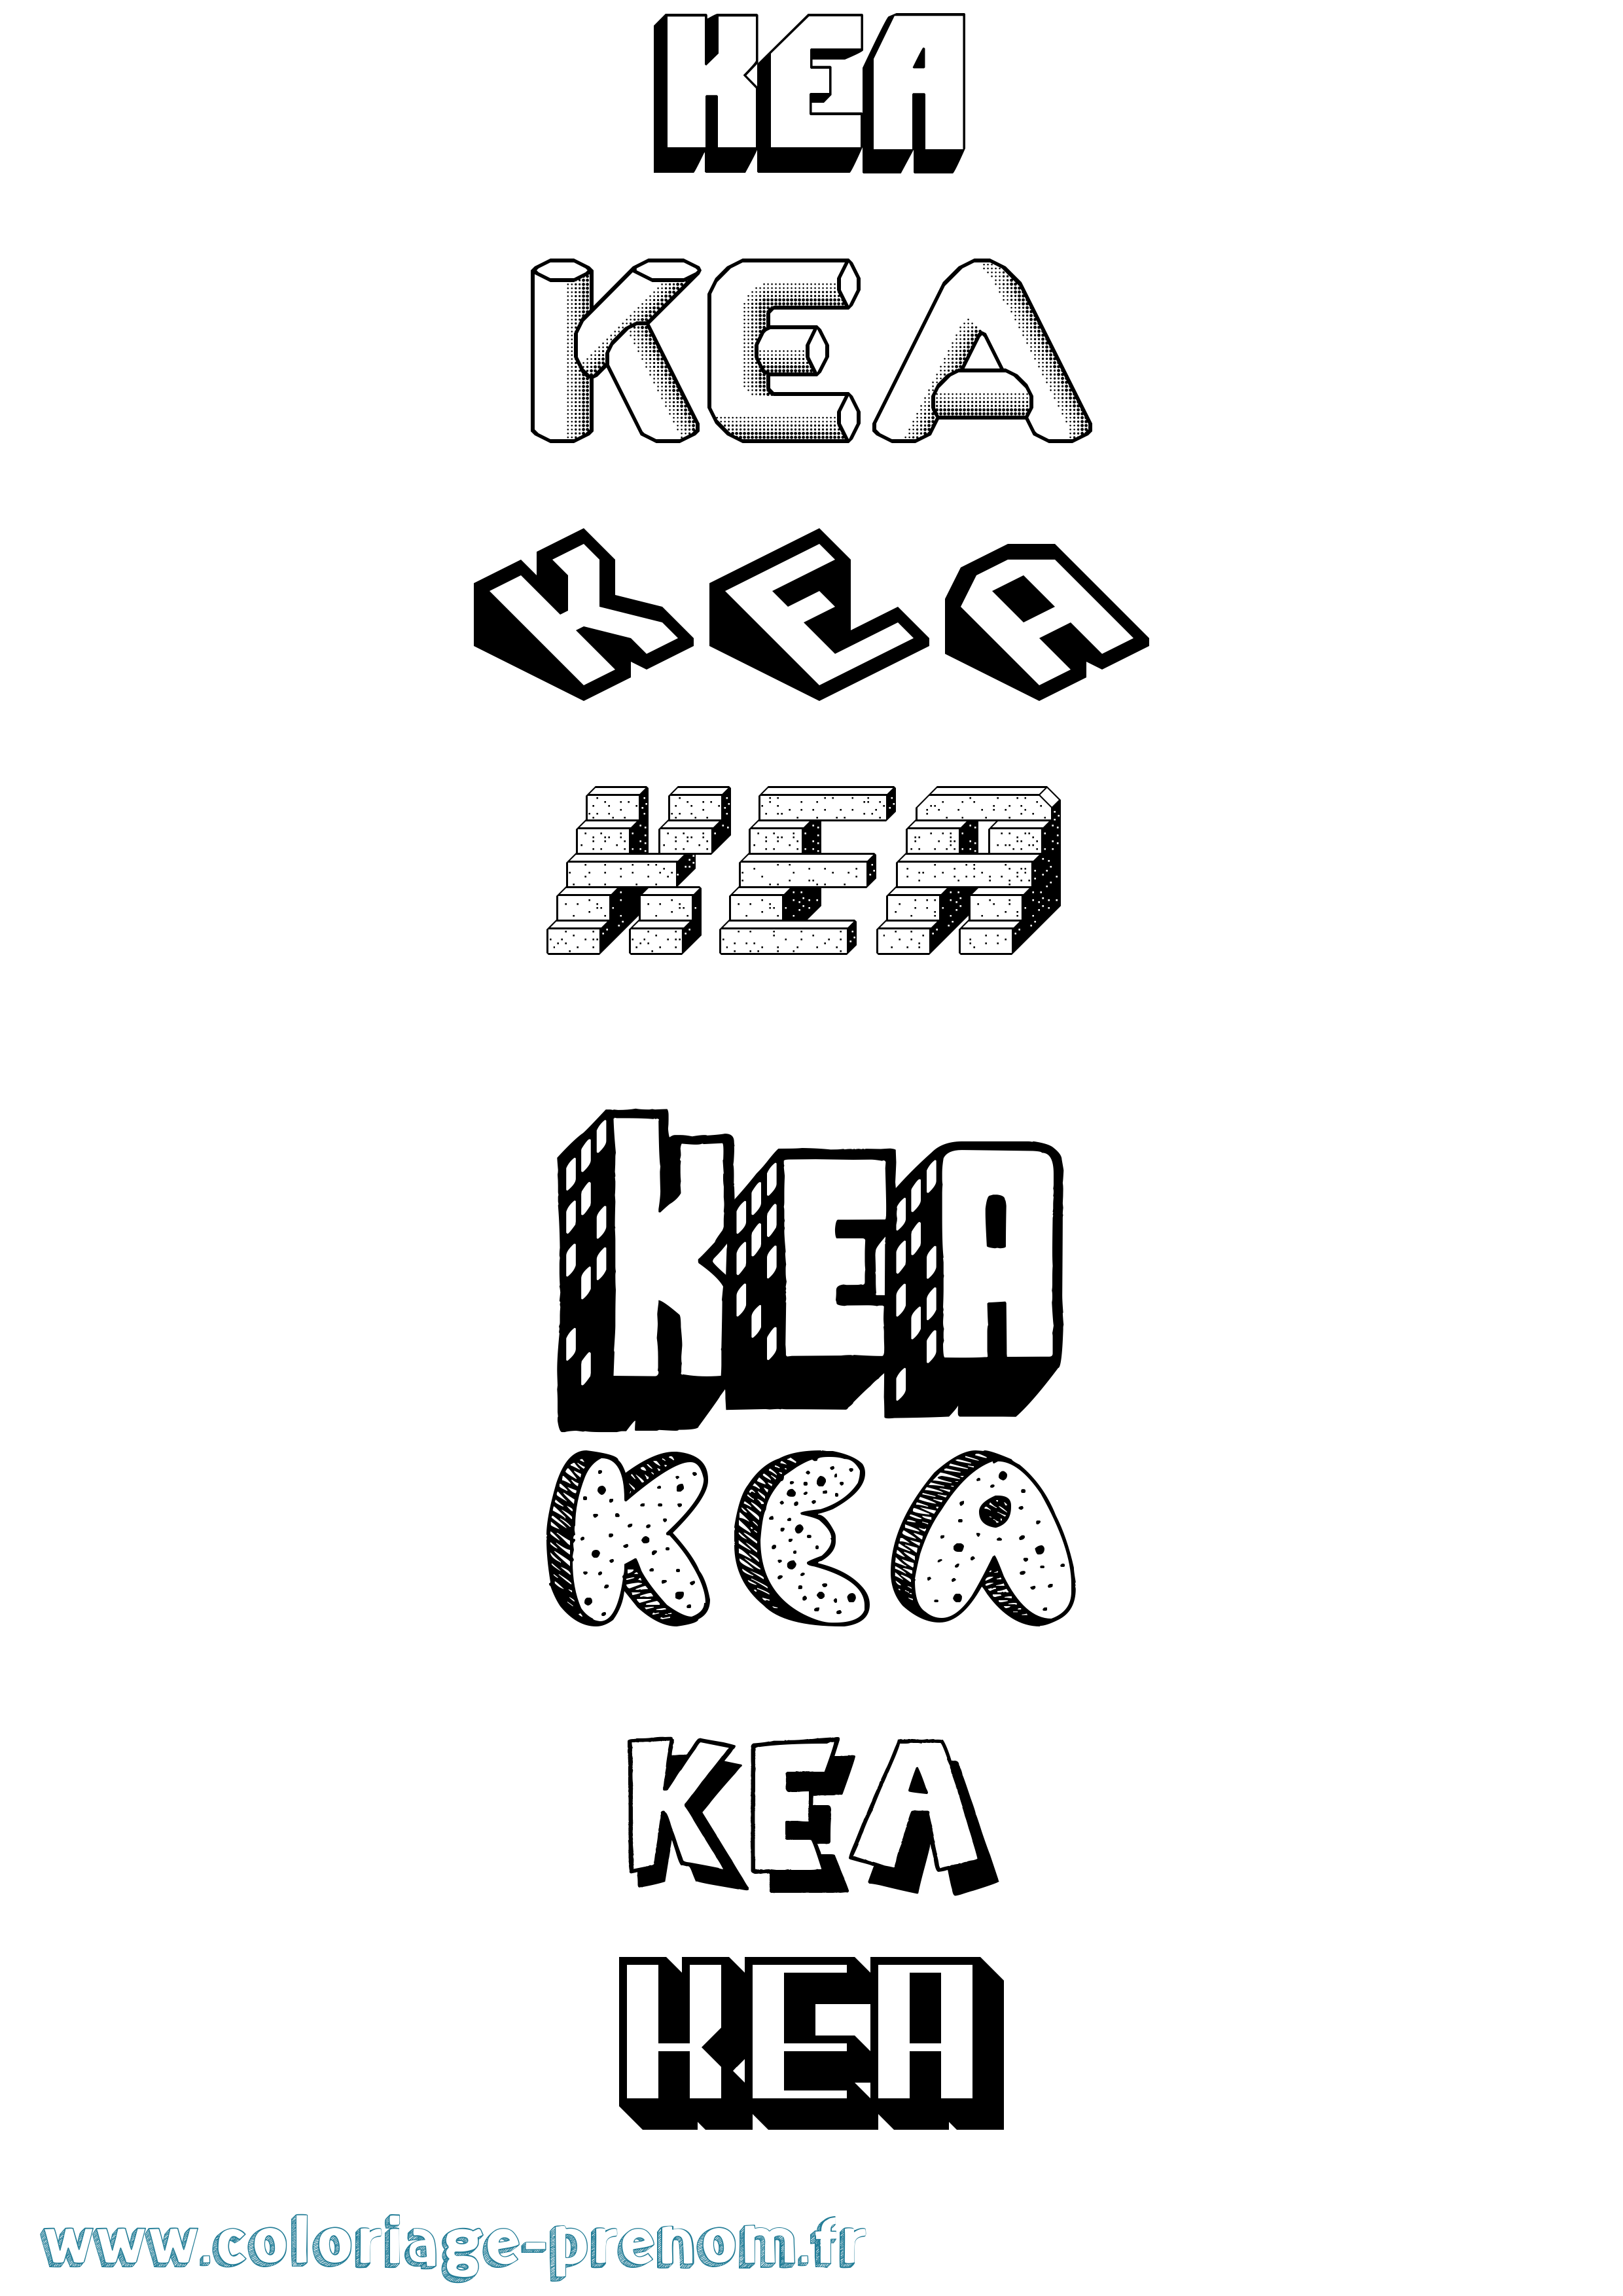 Coloriage prénom Kea Effet 3D